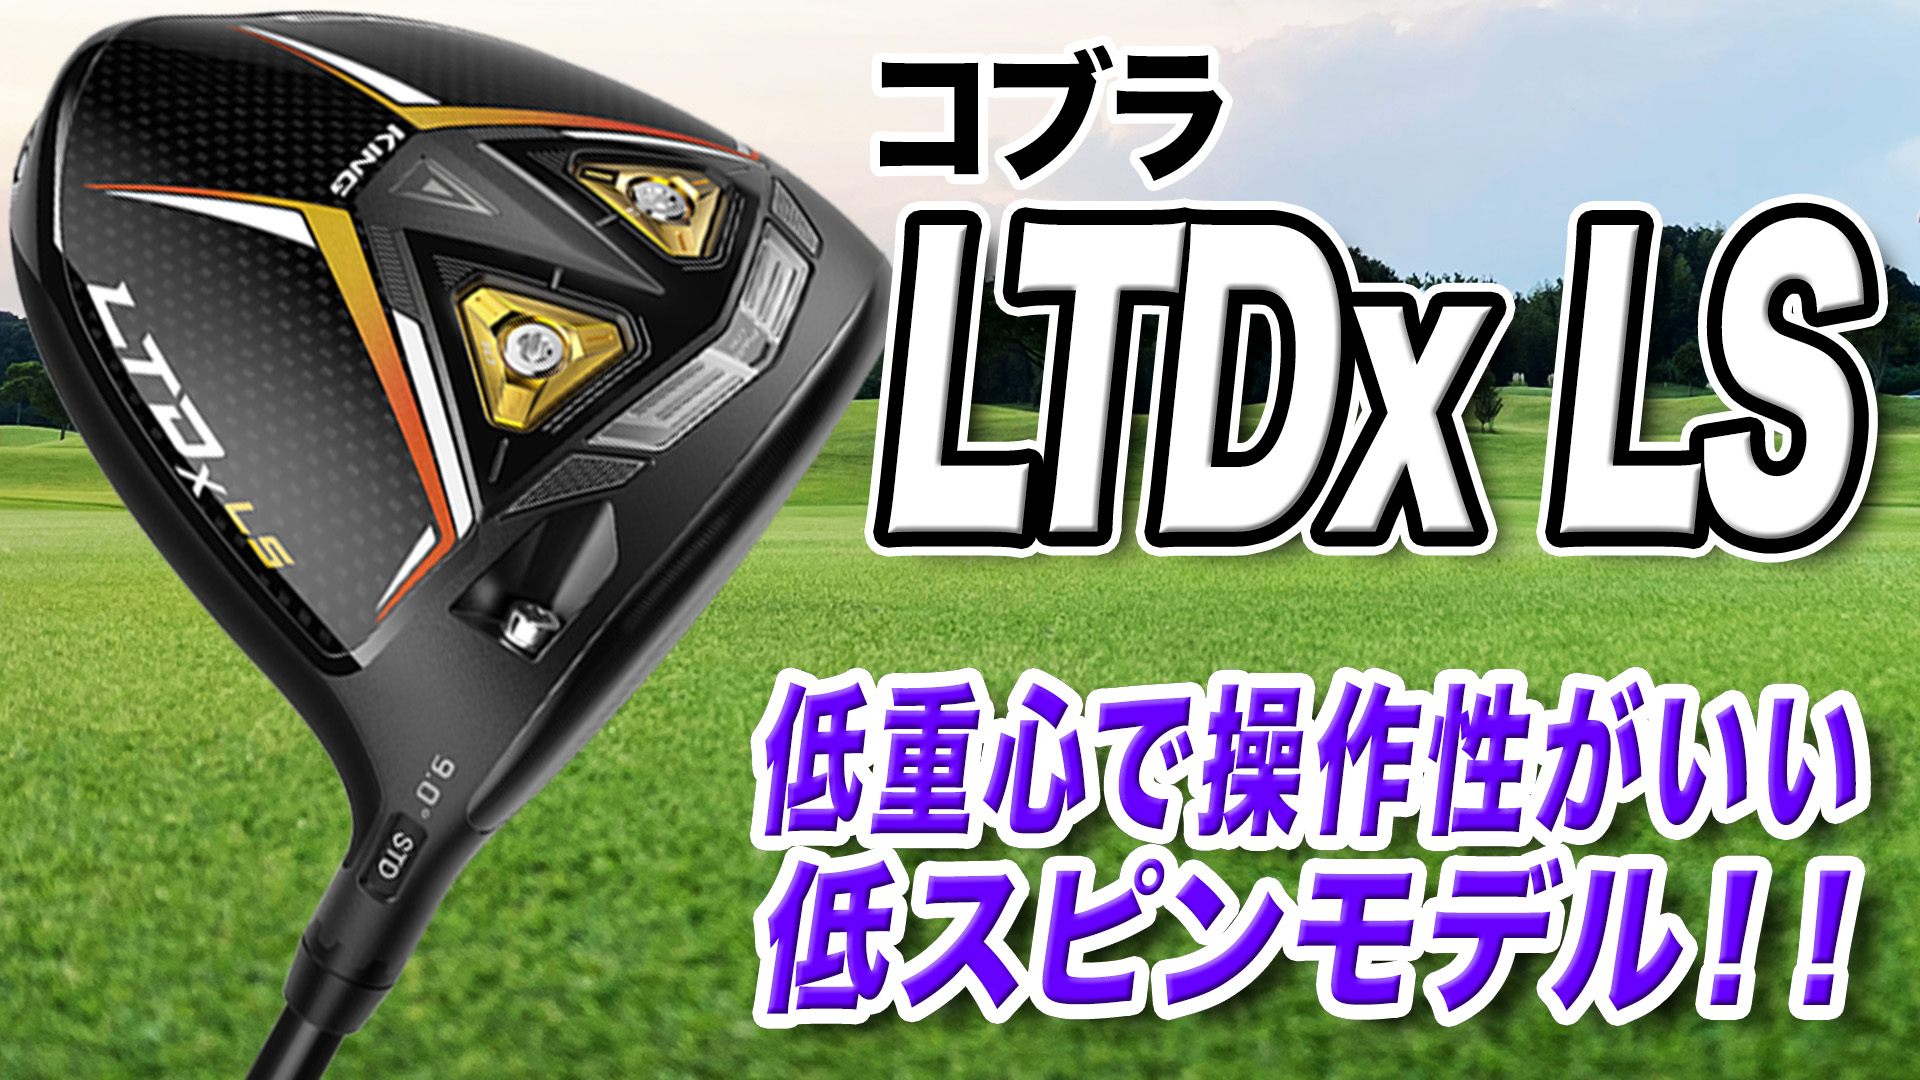 コブラ「LTDx LS ドライバー」【レビュー企画】